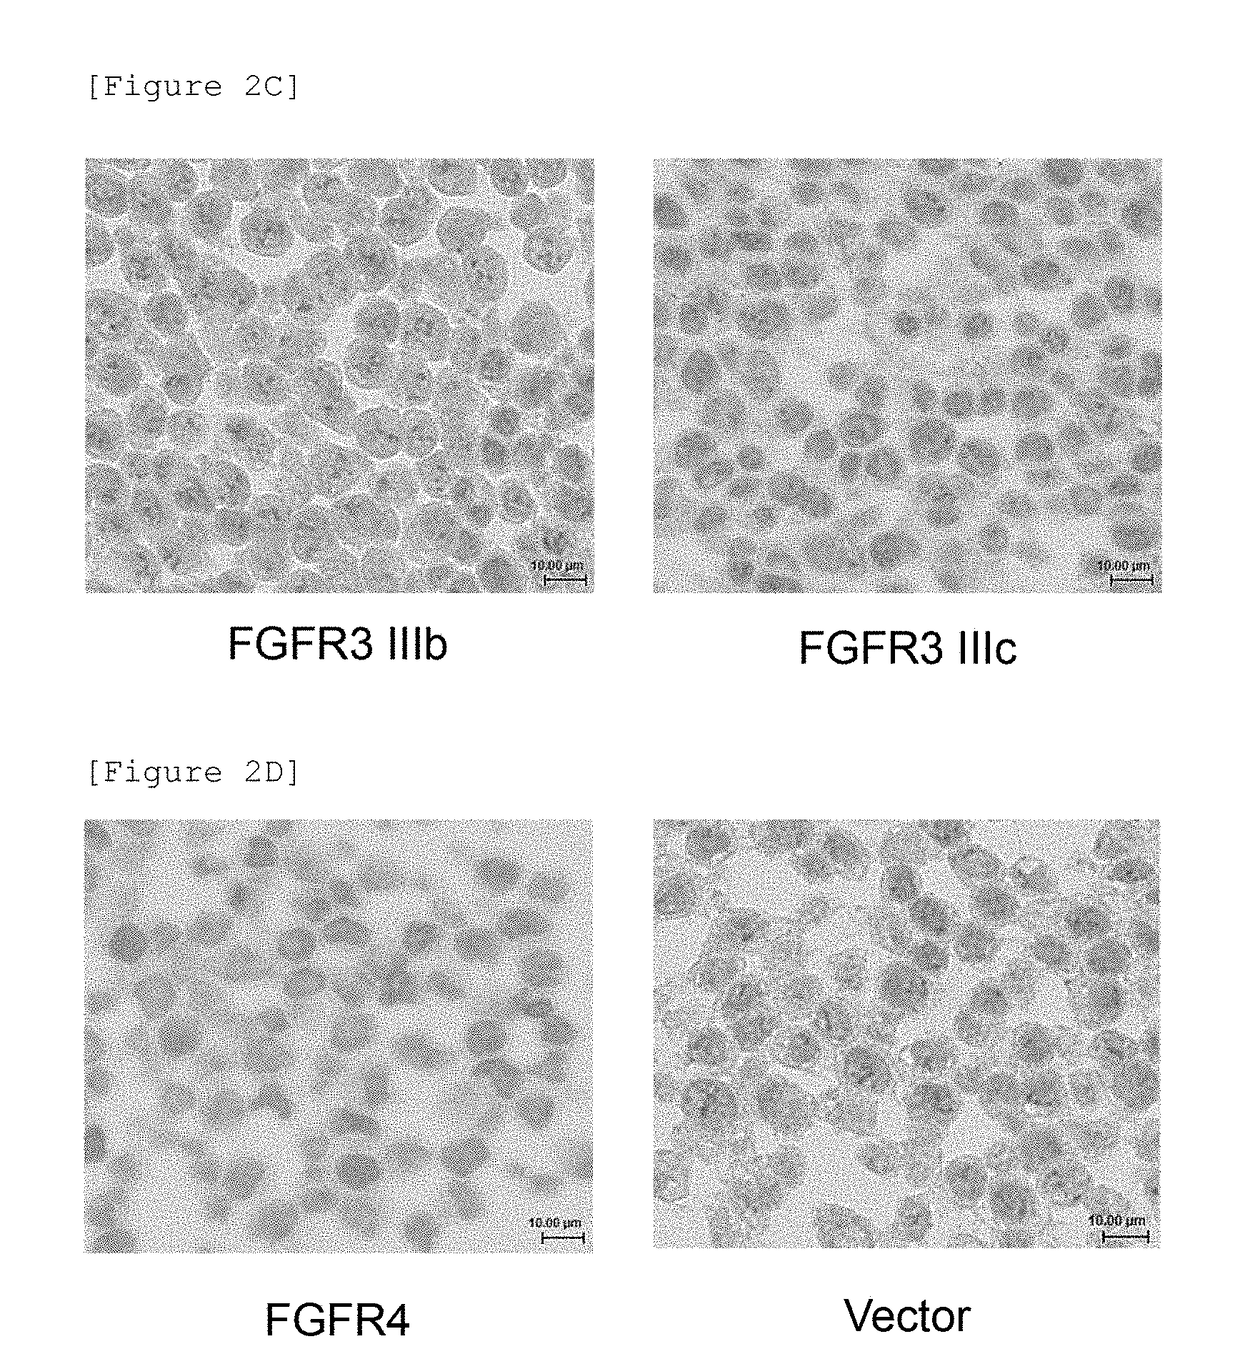 Detection of fgfr2